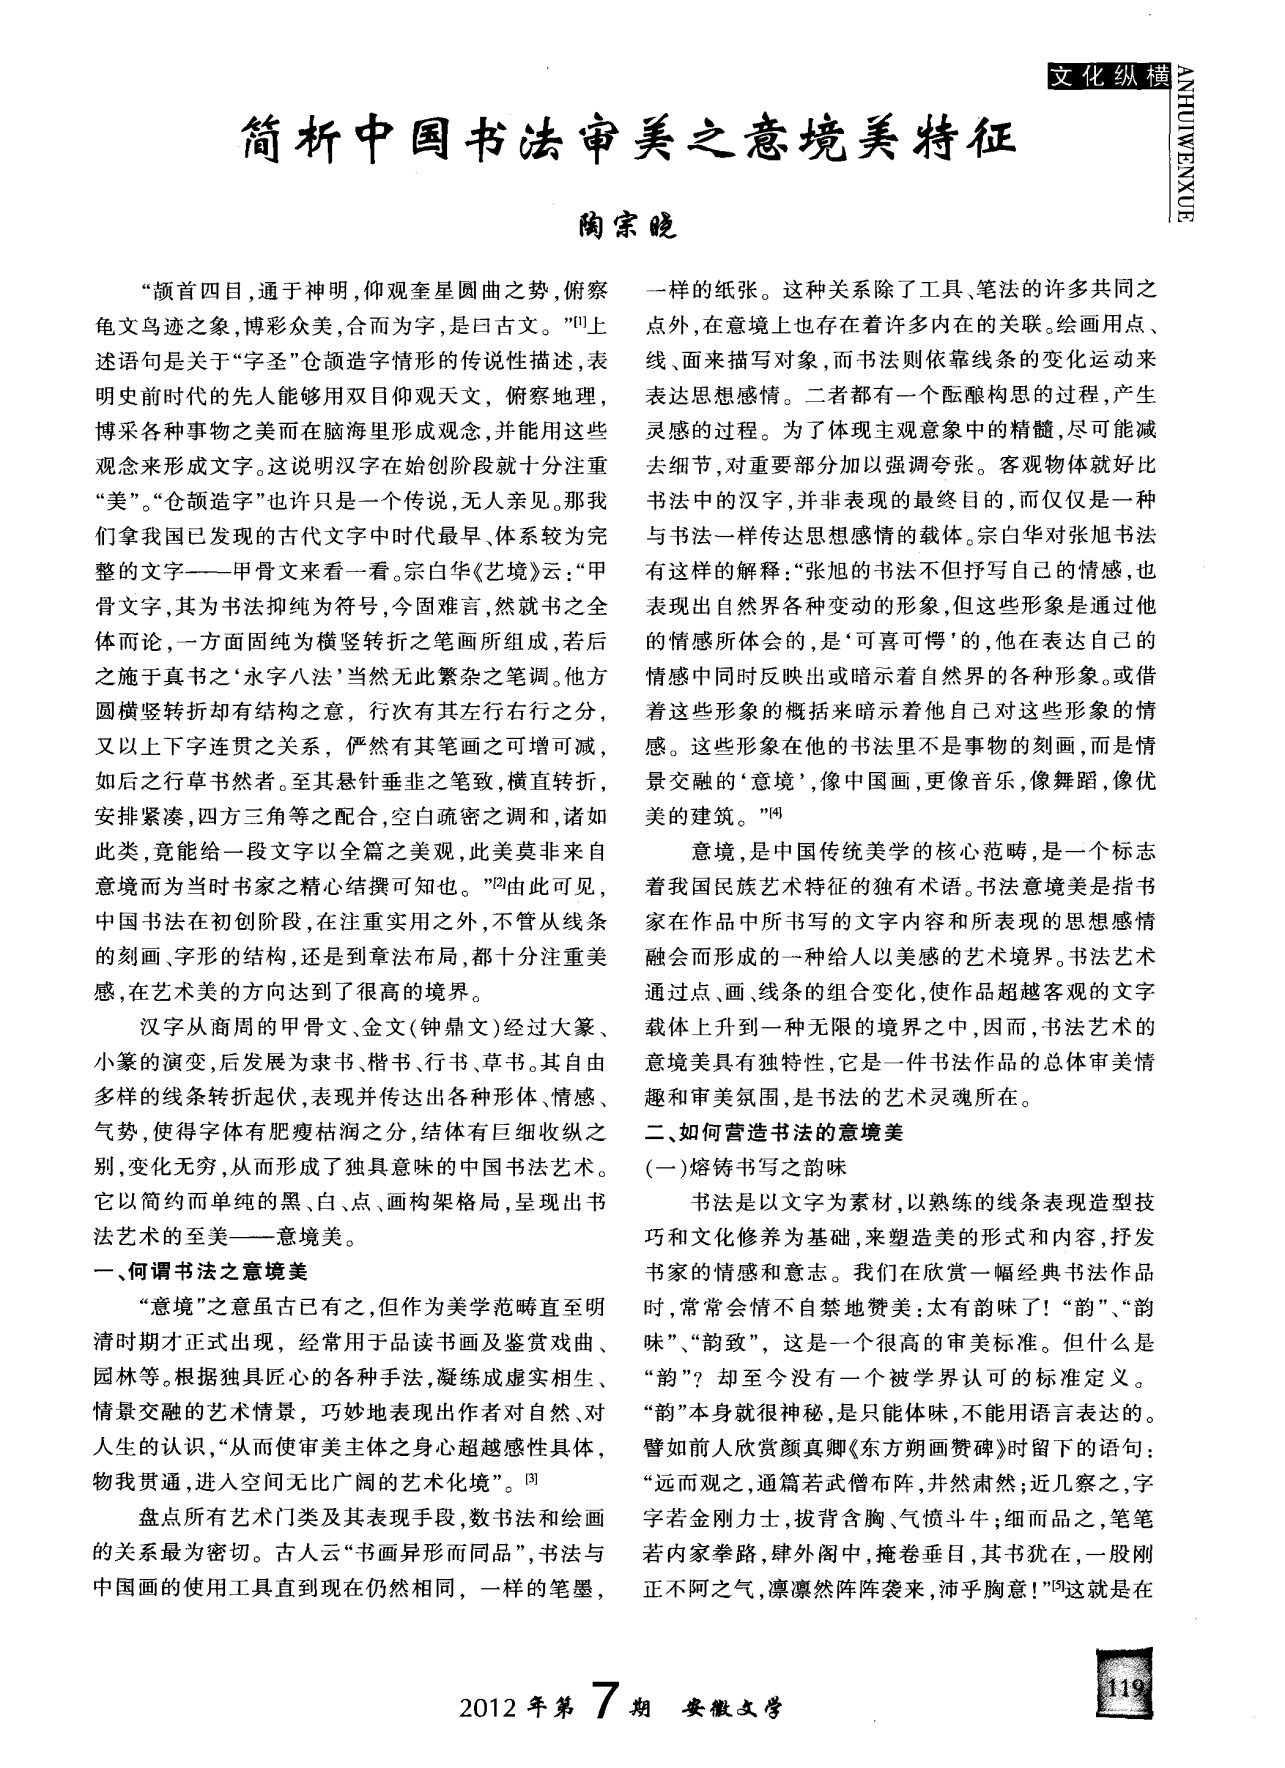 简析中国书法审美之意境美特征